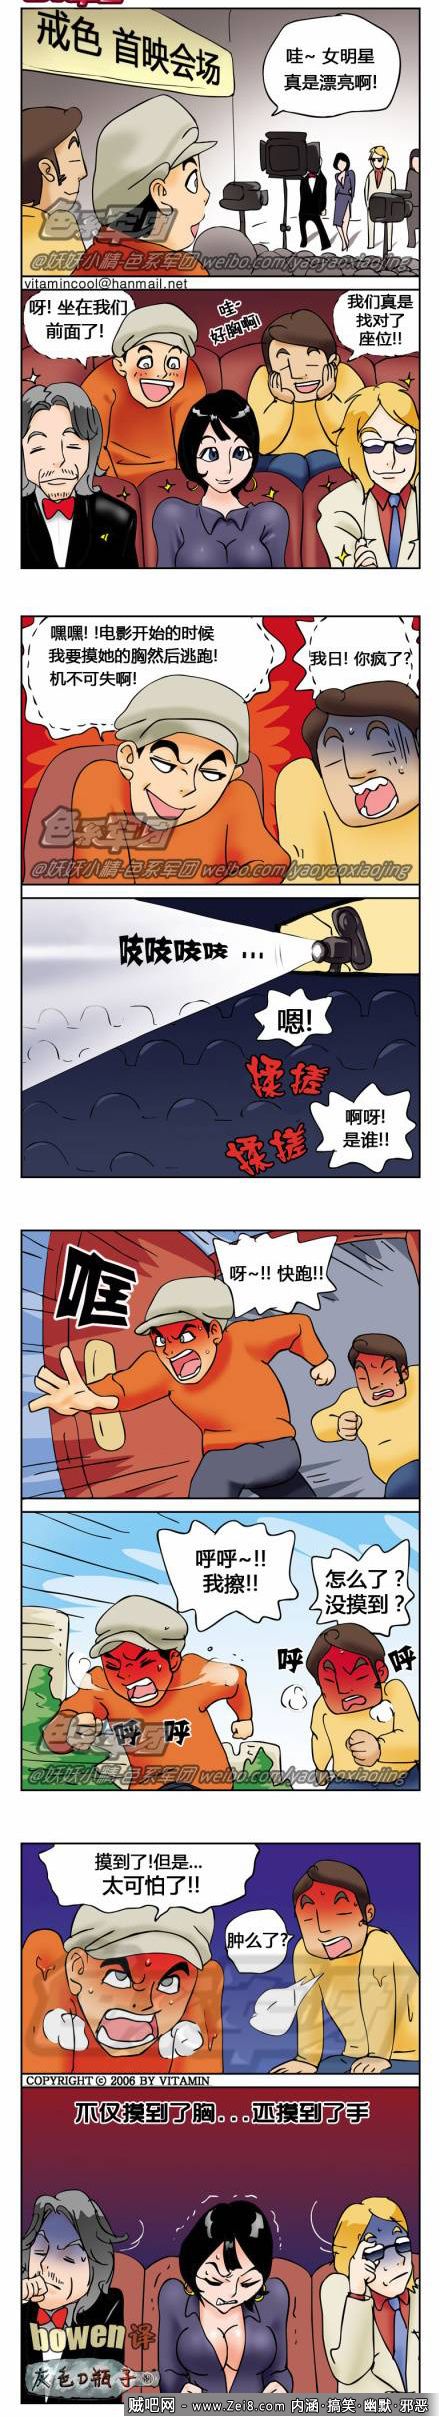 [电影院系列韩国漫画]：屌丝偷袭手法